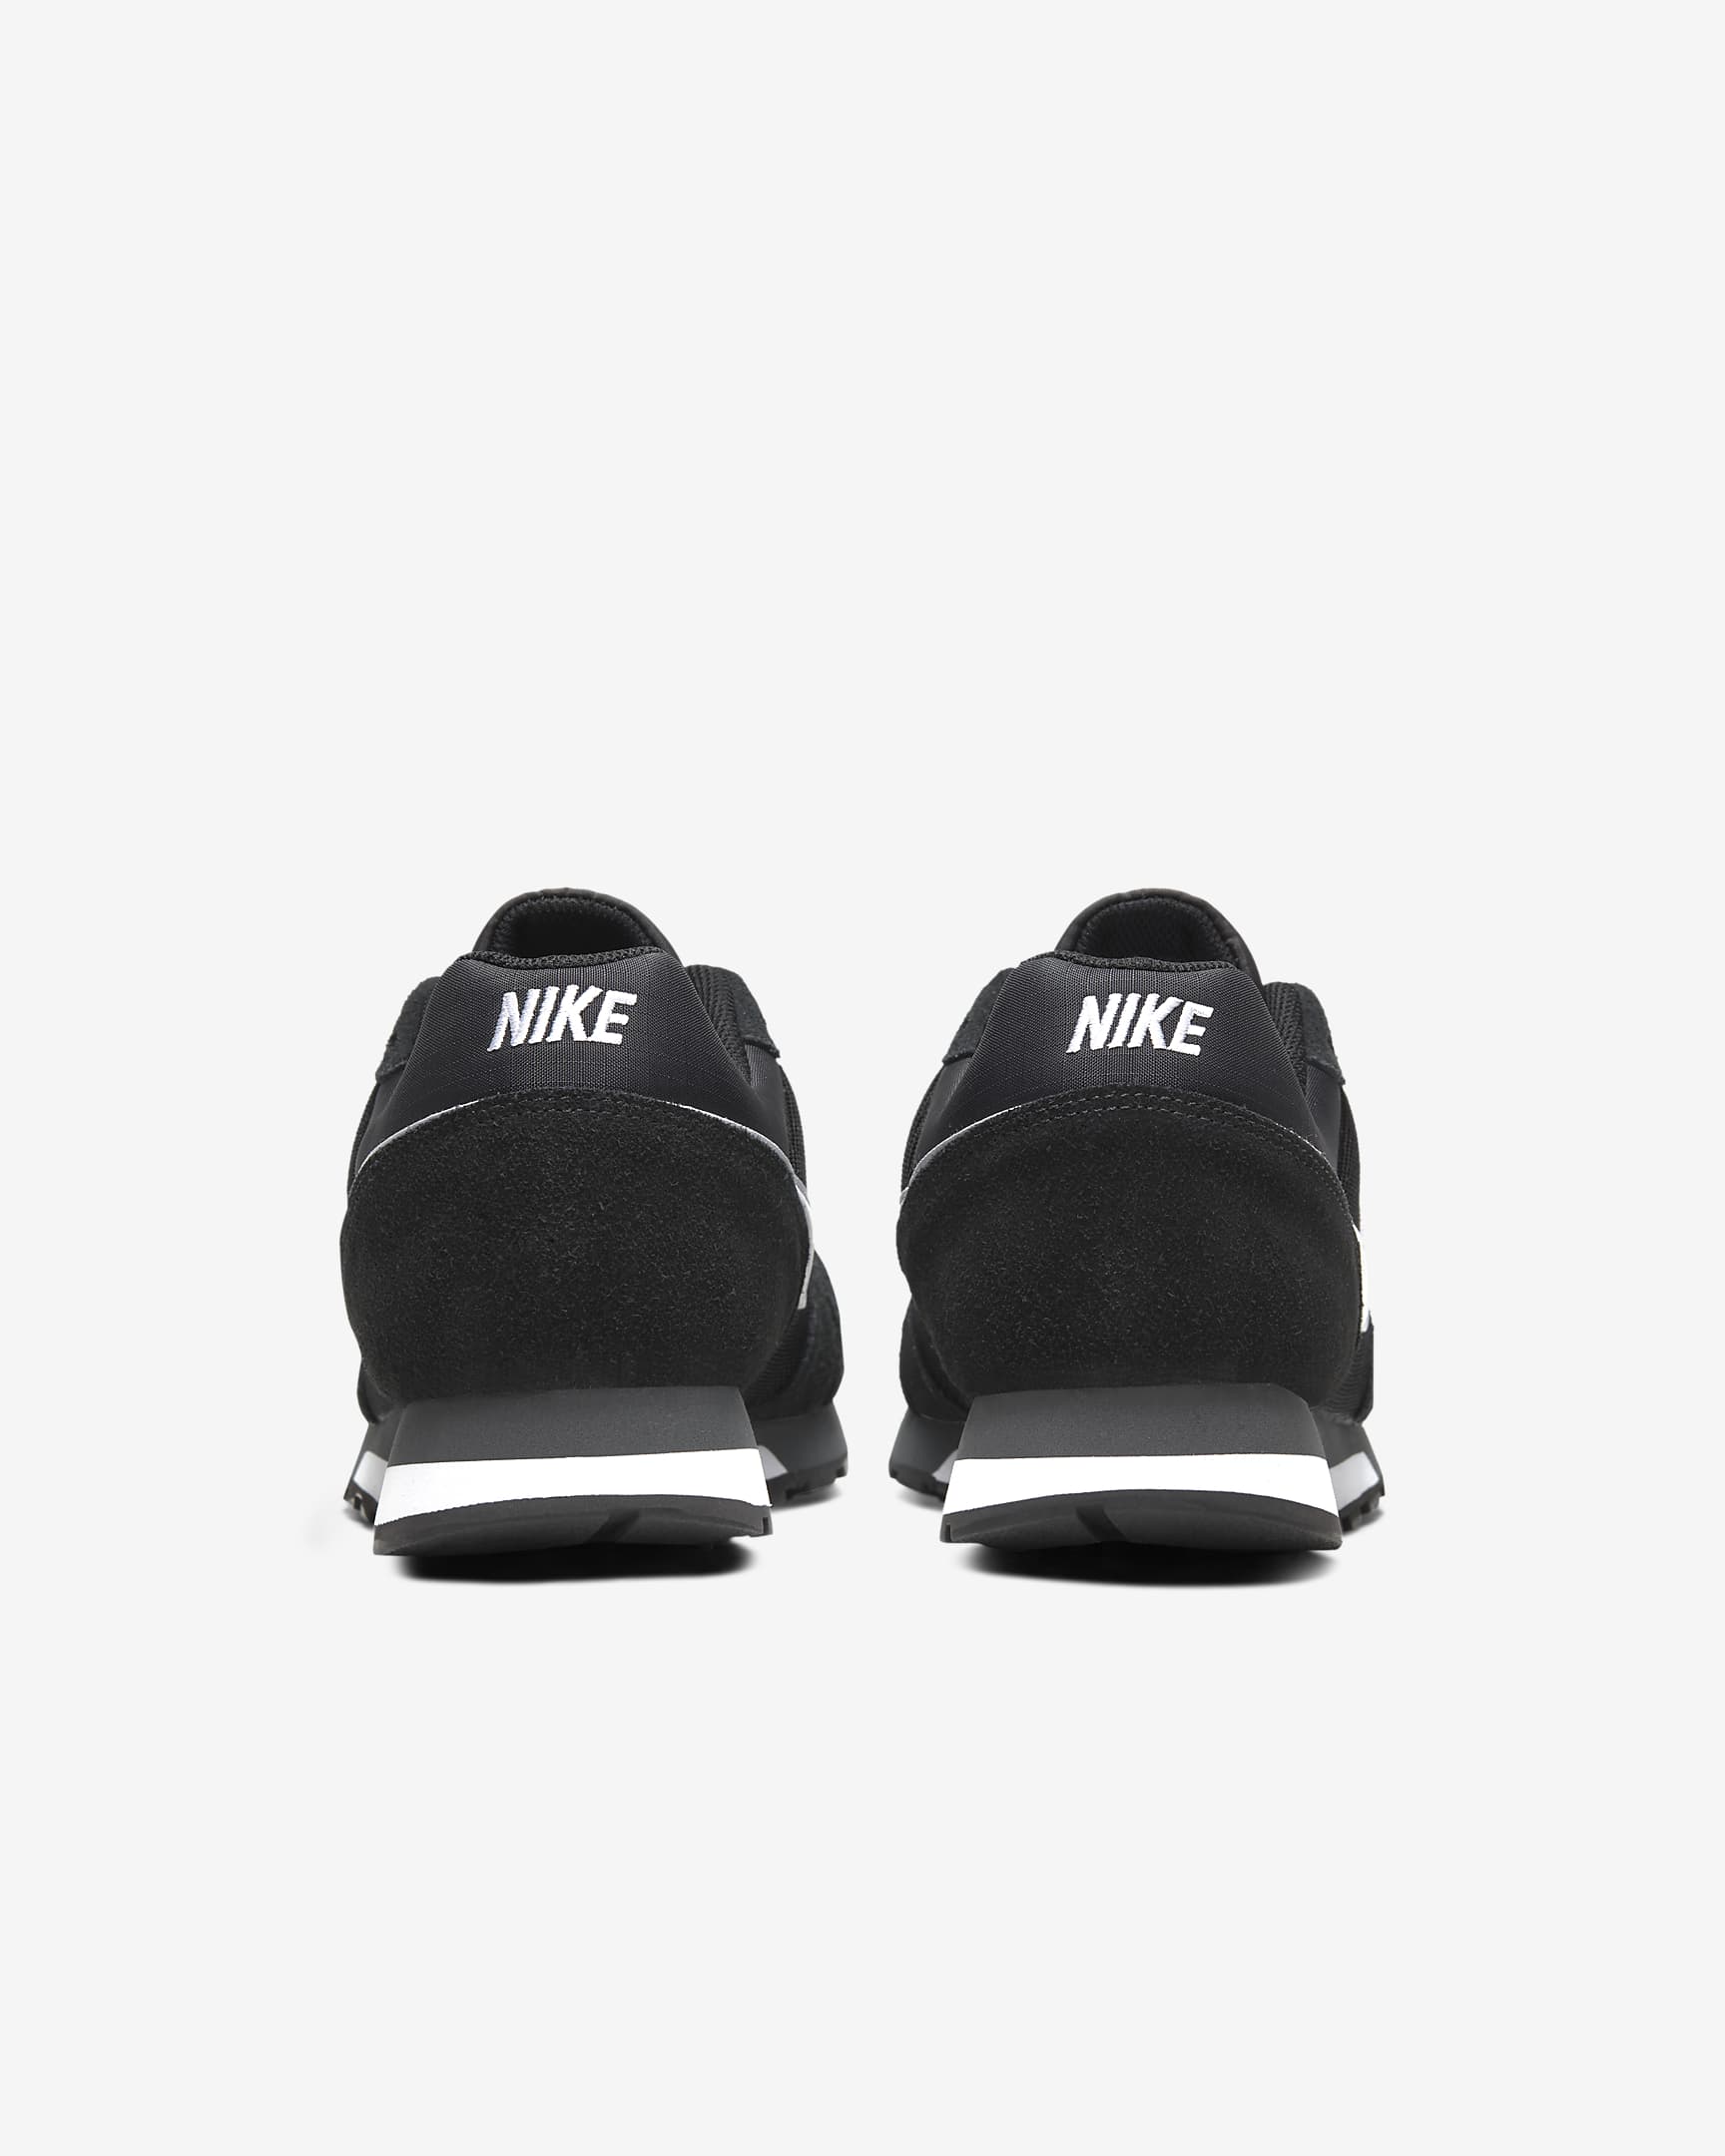 Nike MD Runner 2 Men's Shoes - Black/Anthracite/White